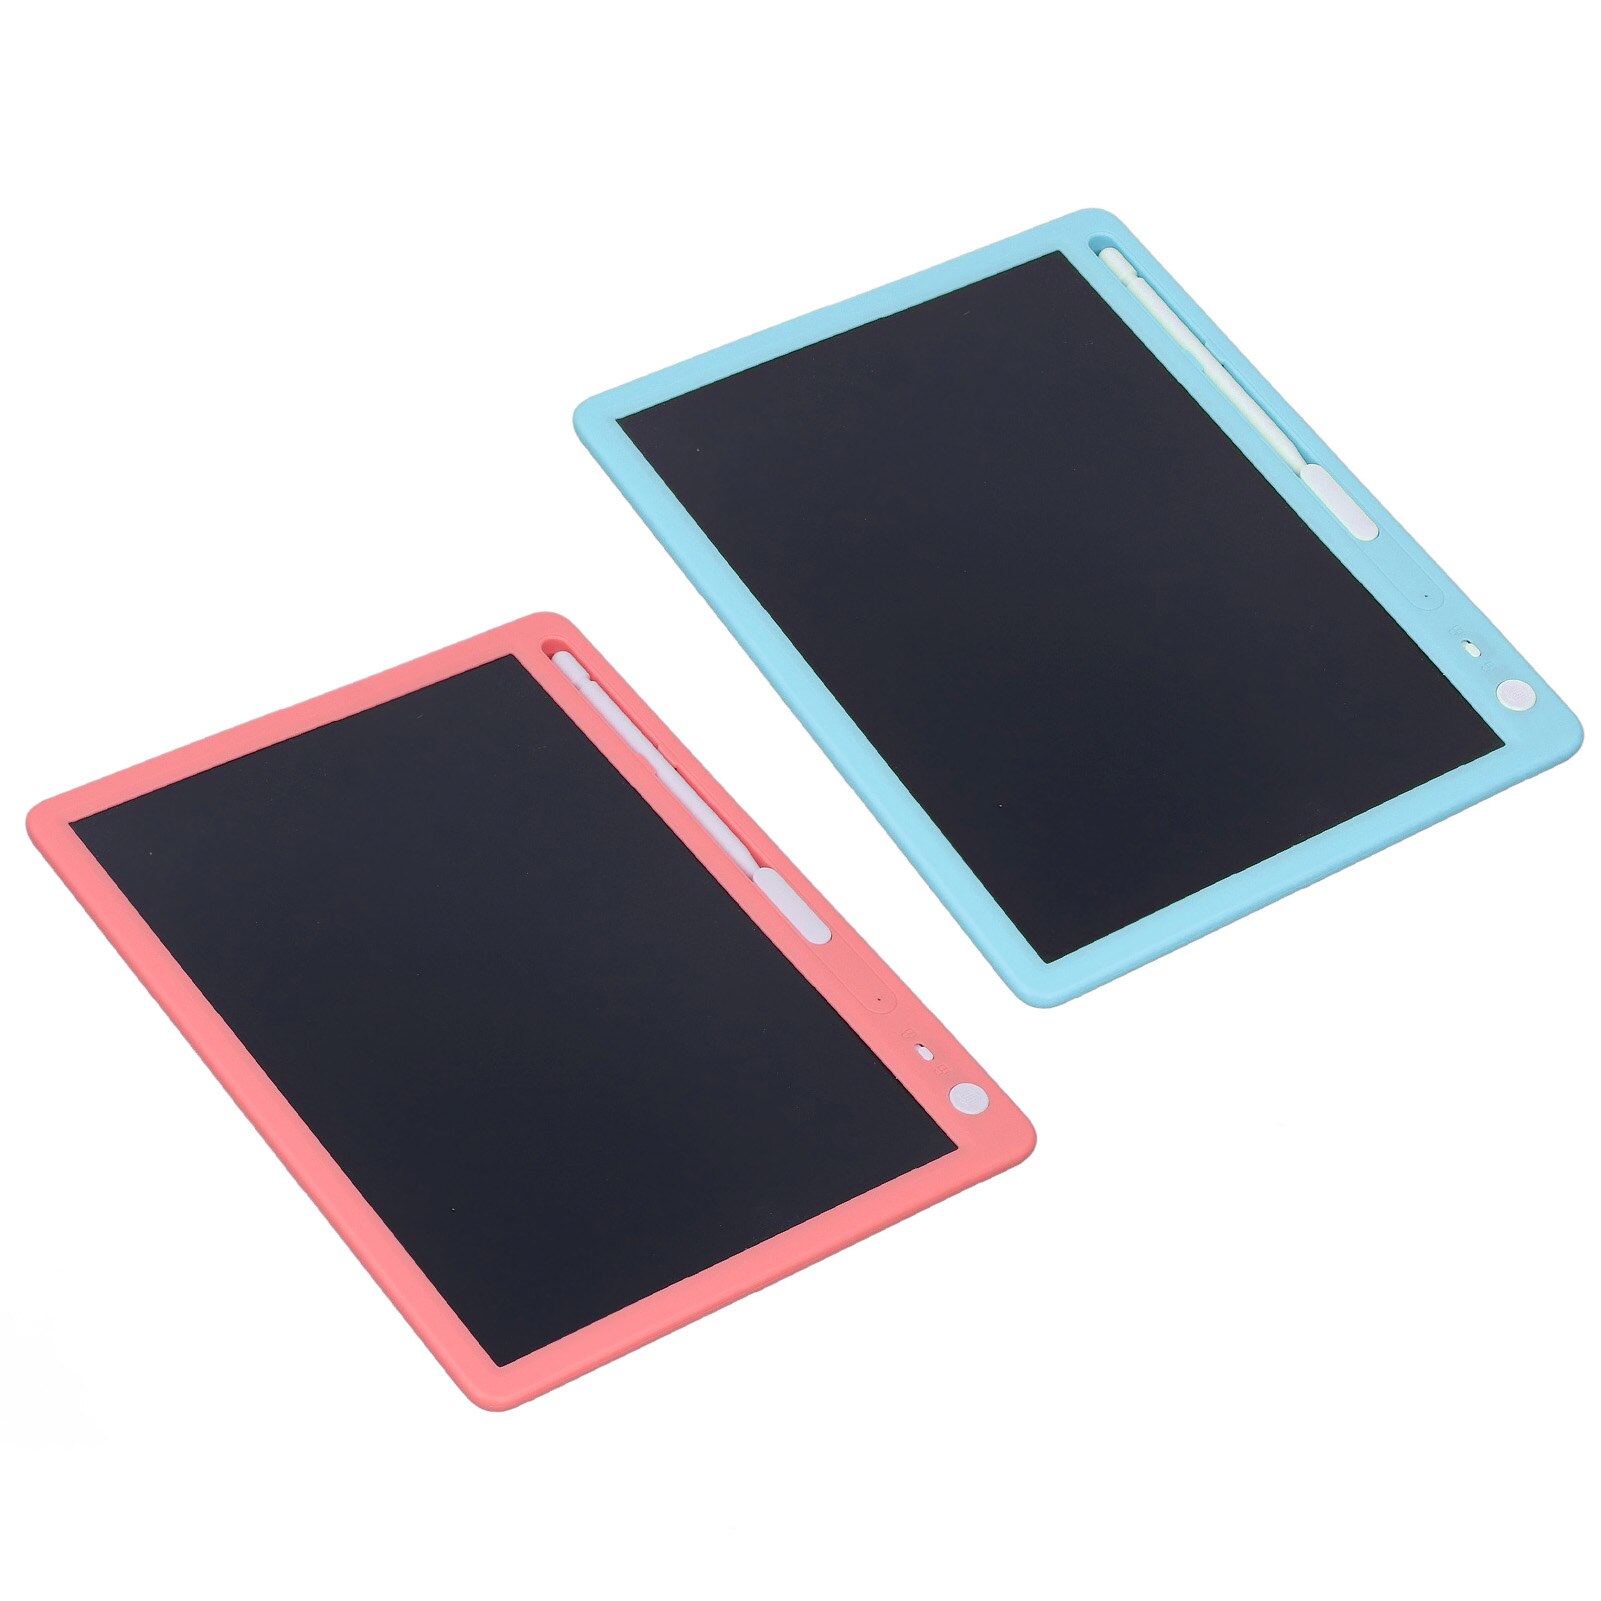 LCD 쓰기 태블릿 재사용 가능한 원터치 스크린 잠금 스위치  낙서 보드, 10 인치 원 클릭 삭제 다채로운 그림